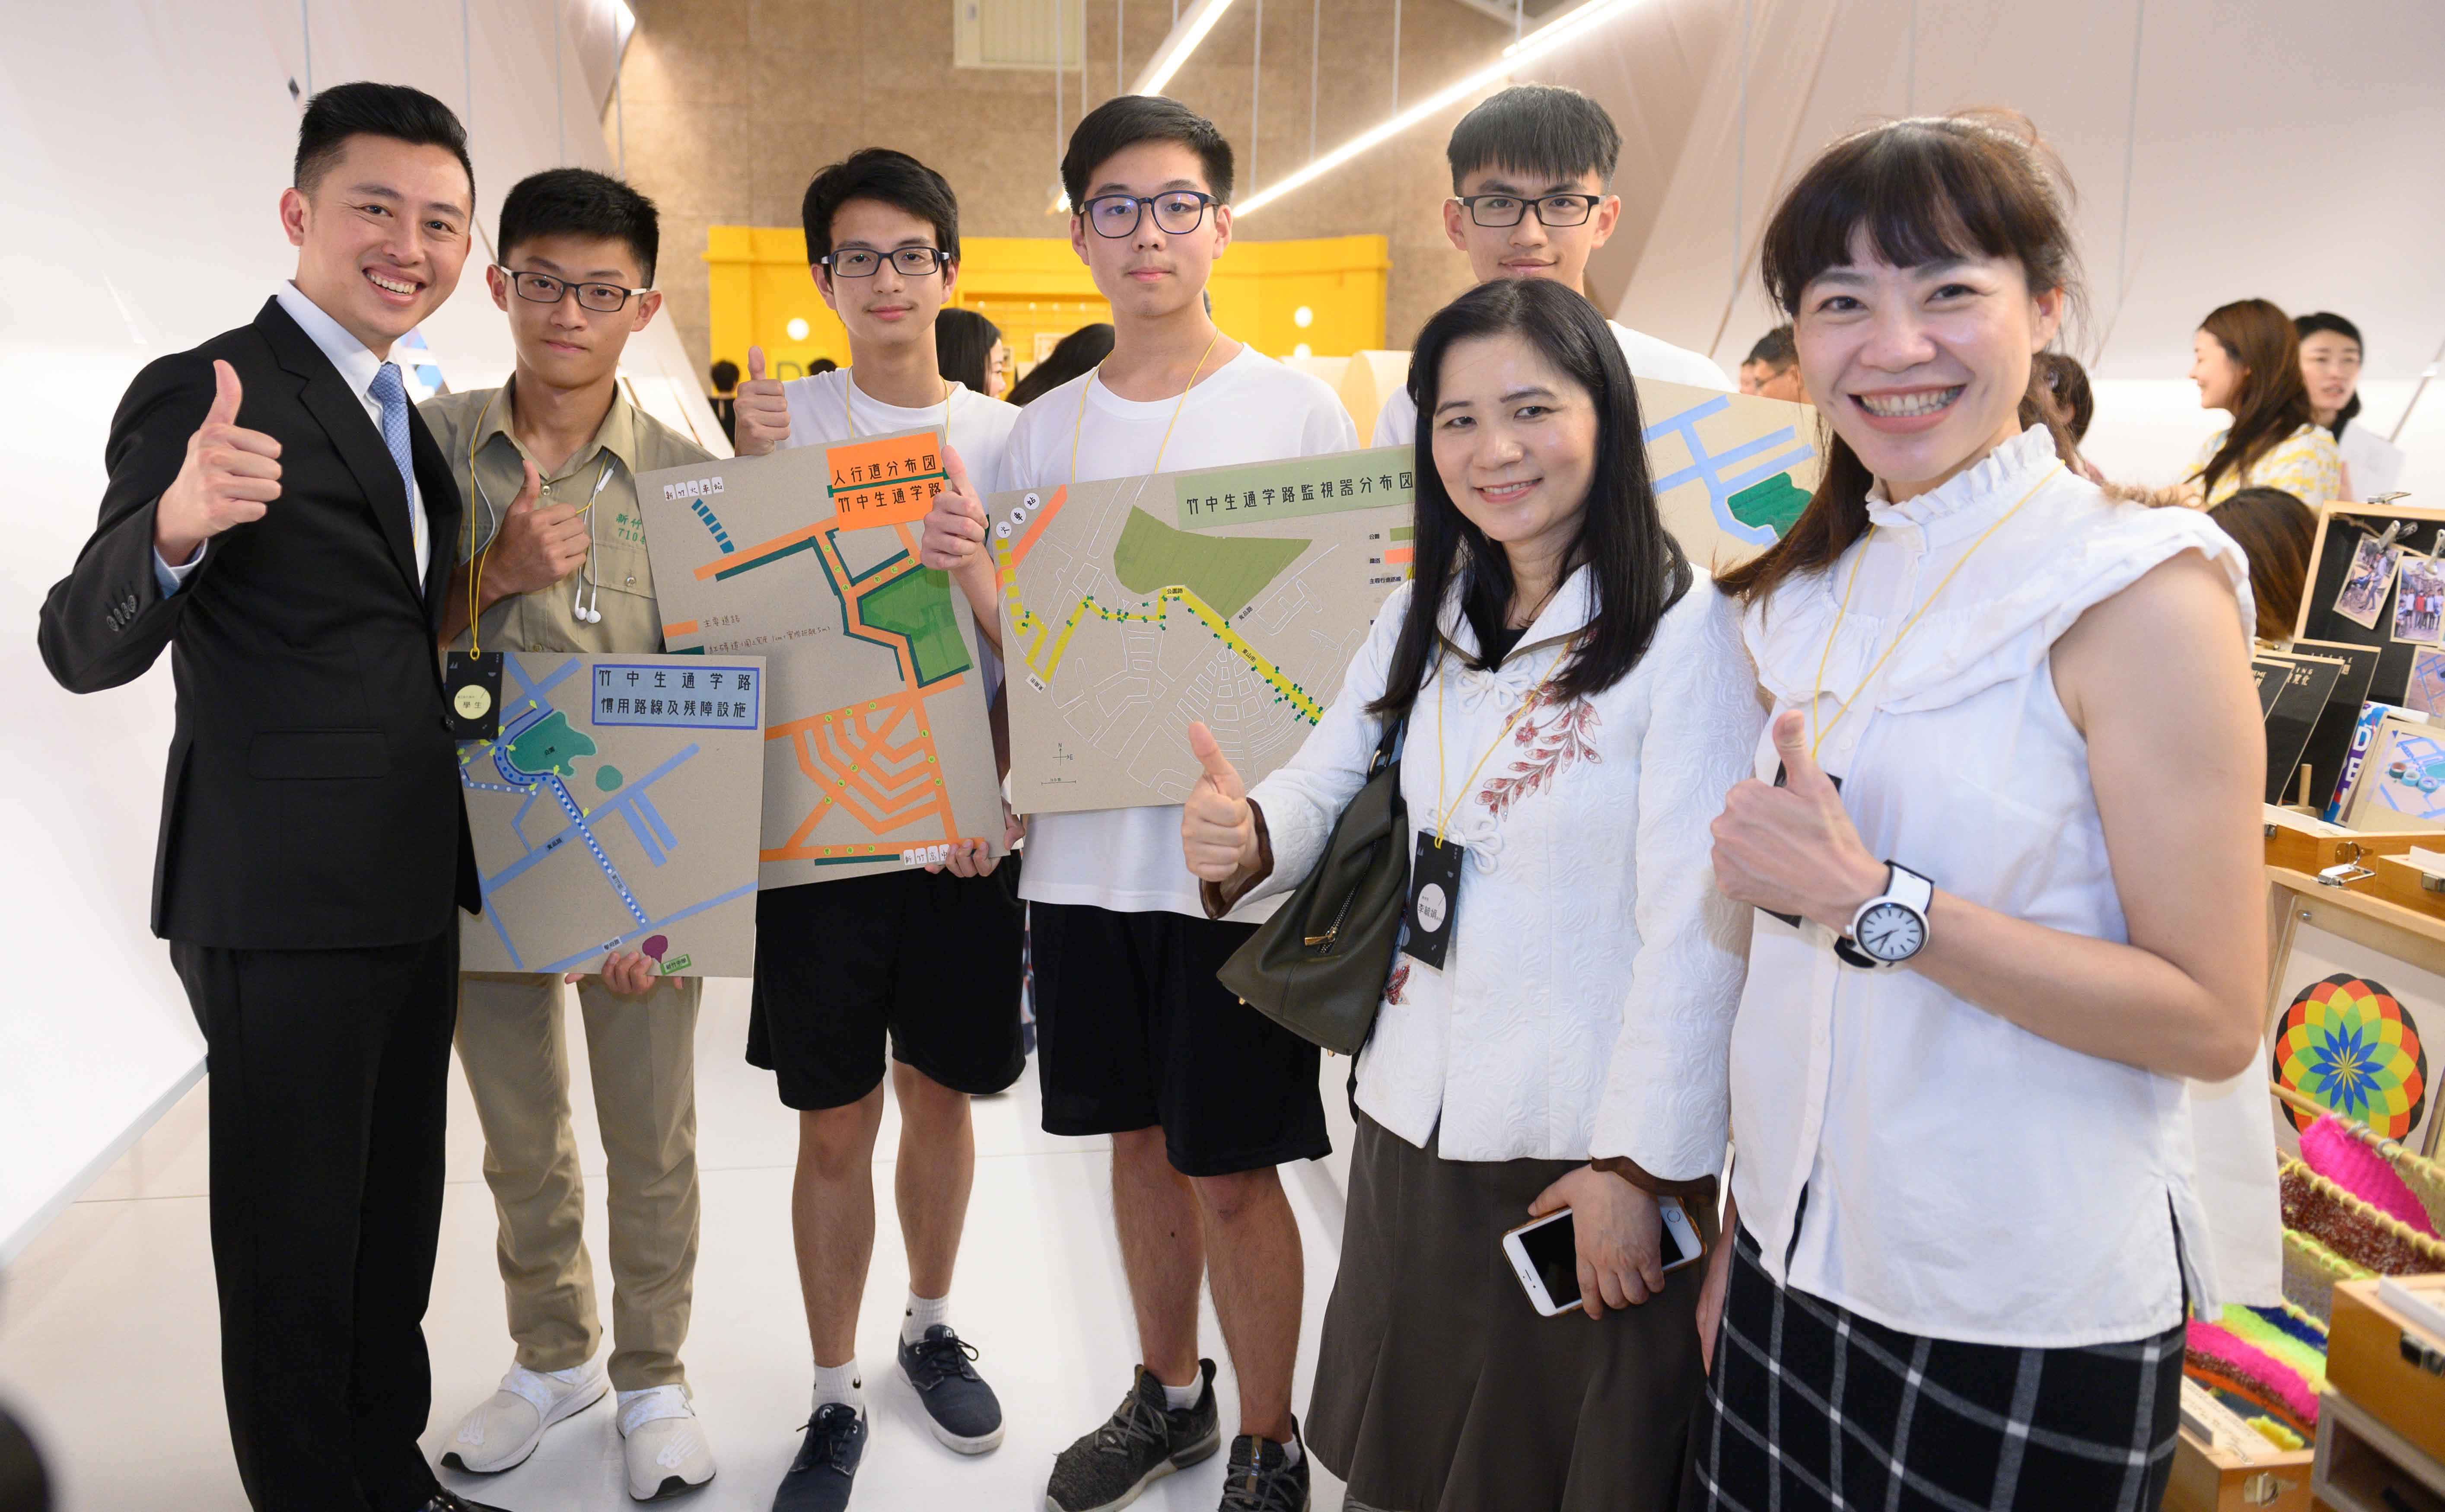 竹市市長林智堅與展出作品學生跟老師合影